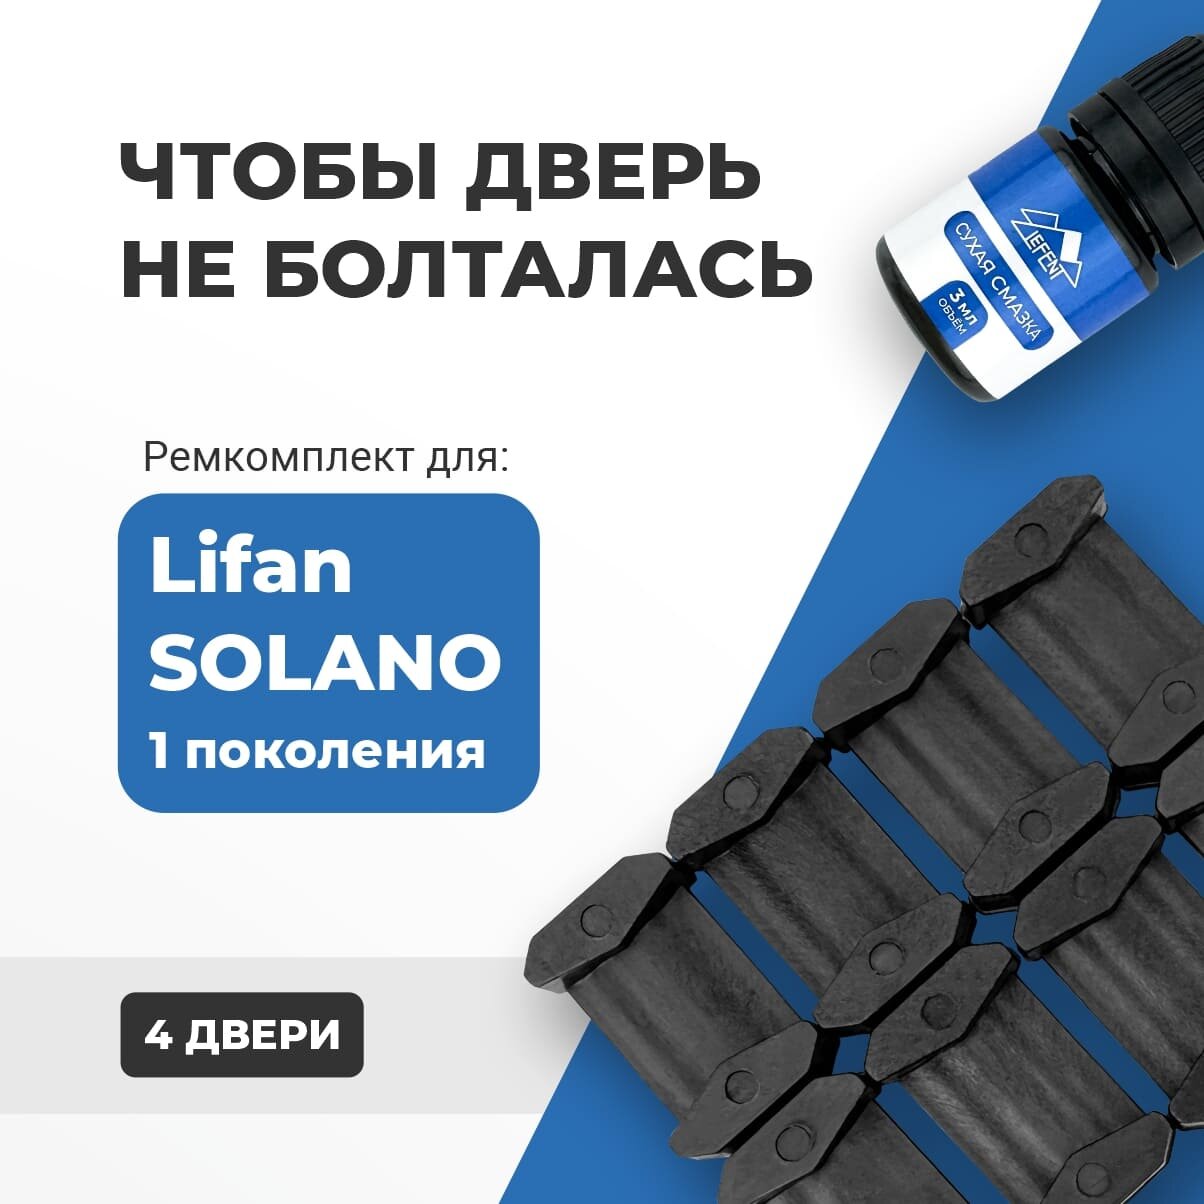 Ремкомплект ограничителей на 4 двери Lifan SOLANO (I) 1 поколения, Кузова 620, 630 - 2010-2016. Комплект ремонта фиксаторов (сухарей)